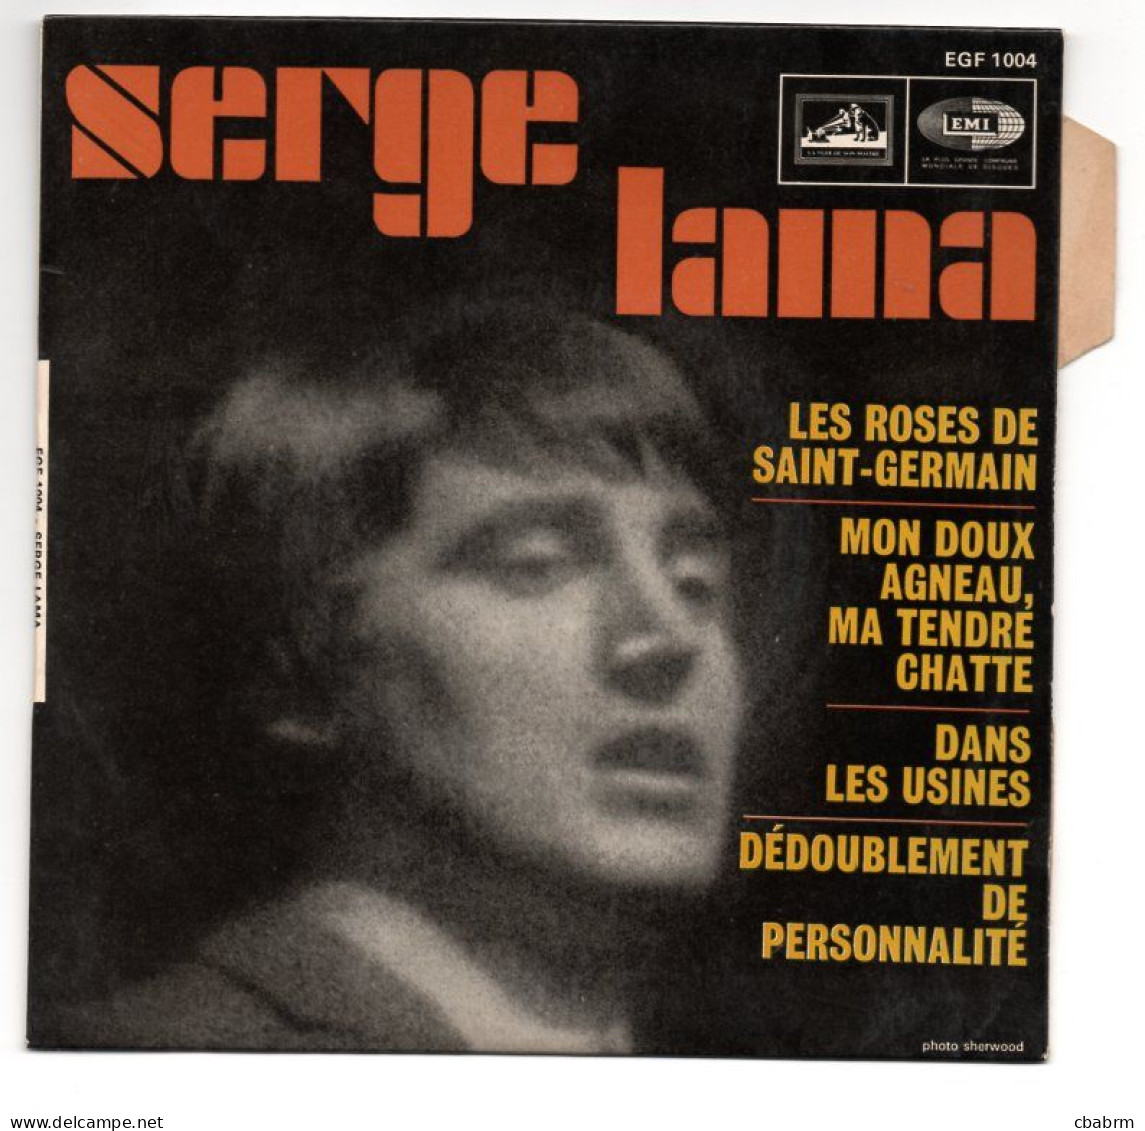 EP 45 TOURS SERGE LAMA LES ROSES DE SAINT-GERMAIN 1967 FRANCE EGF 1004 LANGUETTE - Otros - Canción Francesa